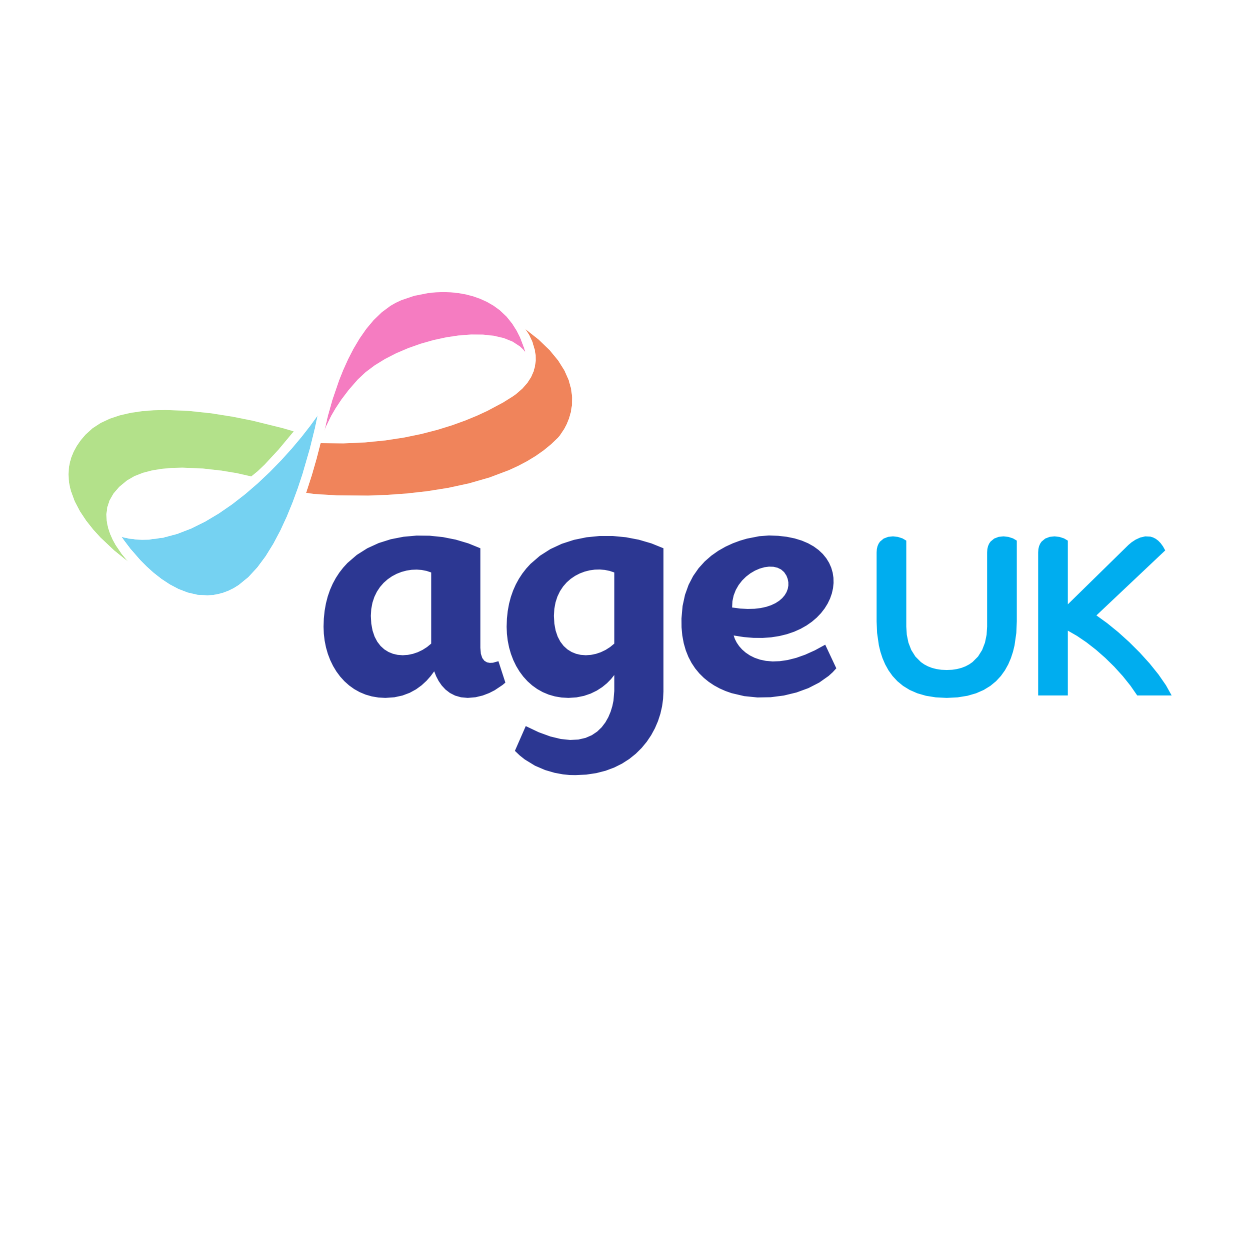 Age UK Logo